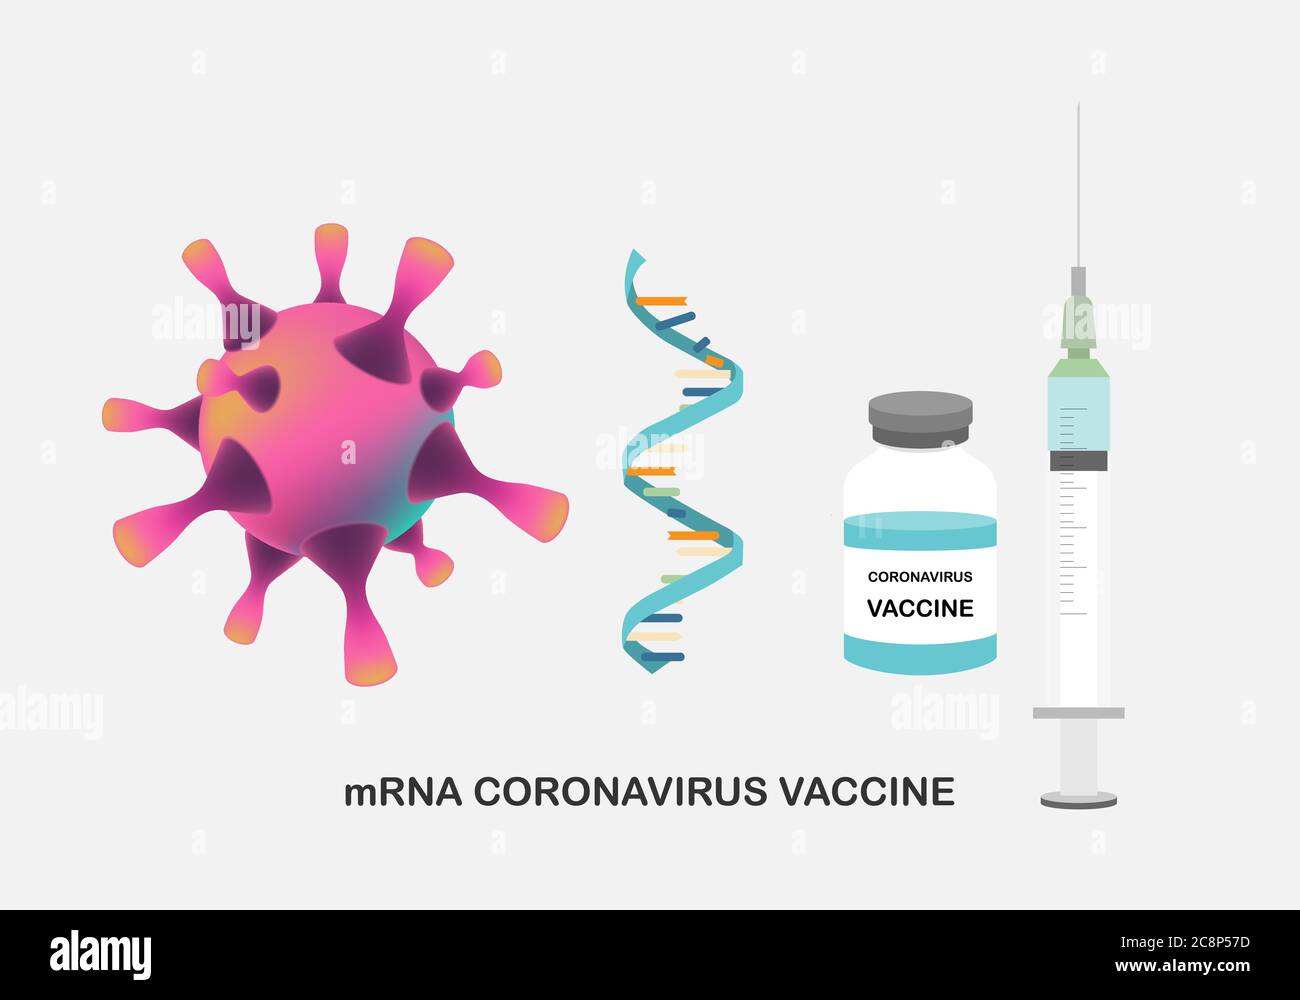 Conceptos de la vacuna mRNA para la protección contra el coronavirus. Ilustración de ARNm, jeringa con aguja y botella de vacuna para inmunizacion contra corona Ilustración del Vector